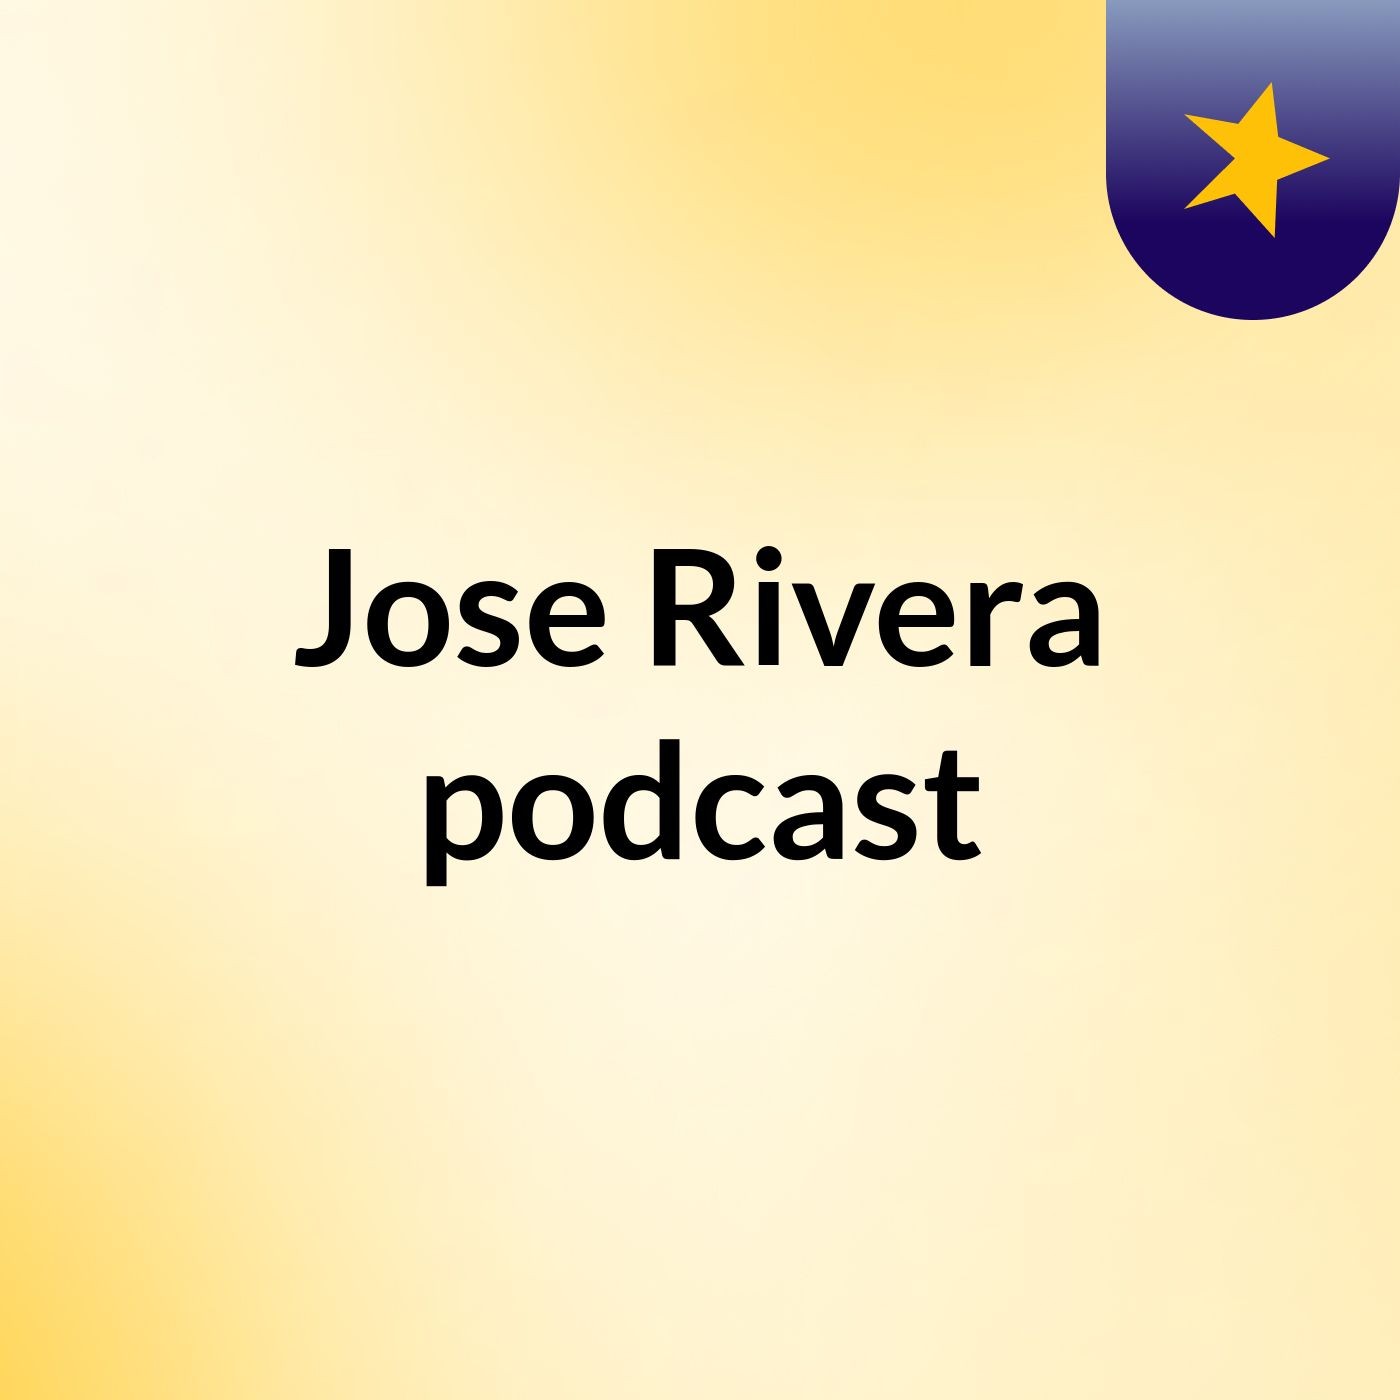 Jose Rivera podcast